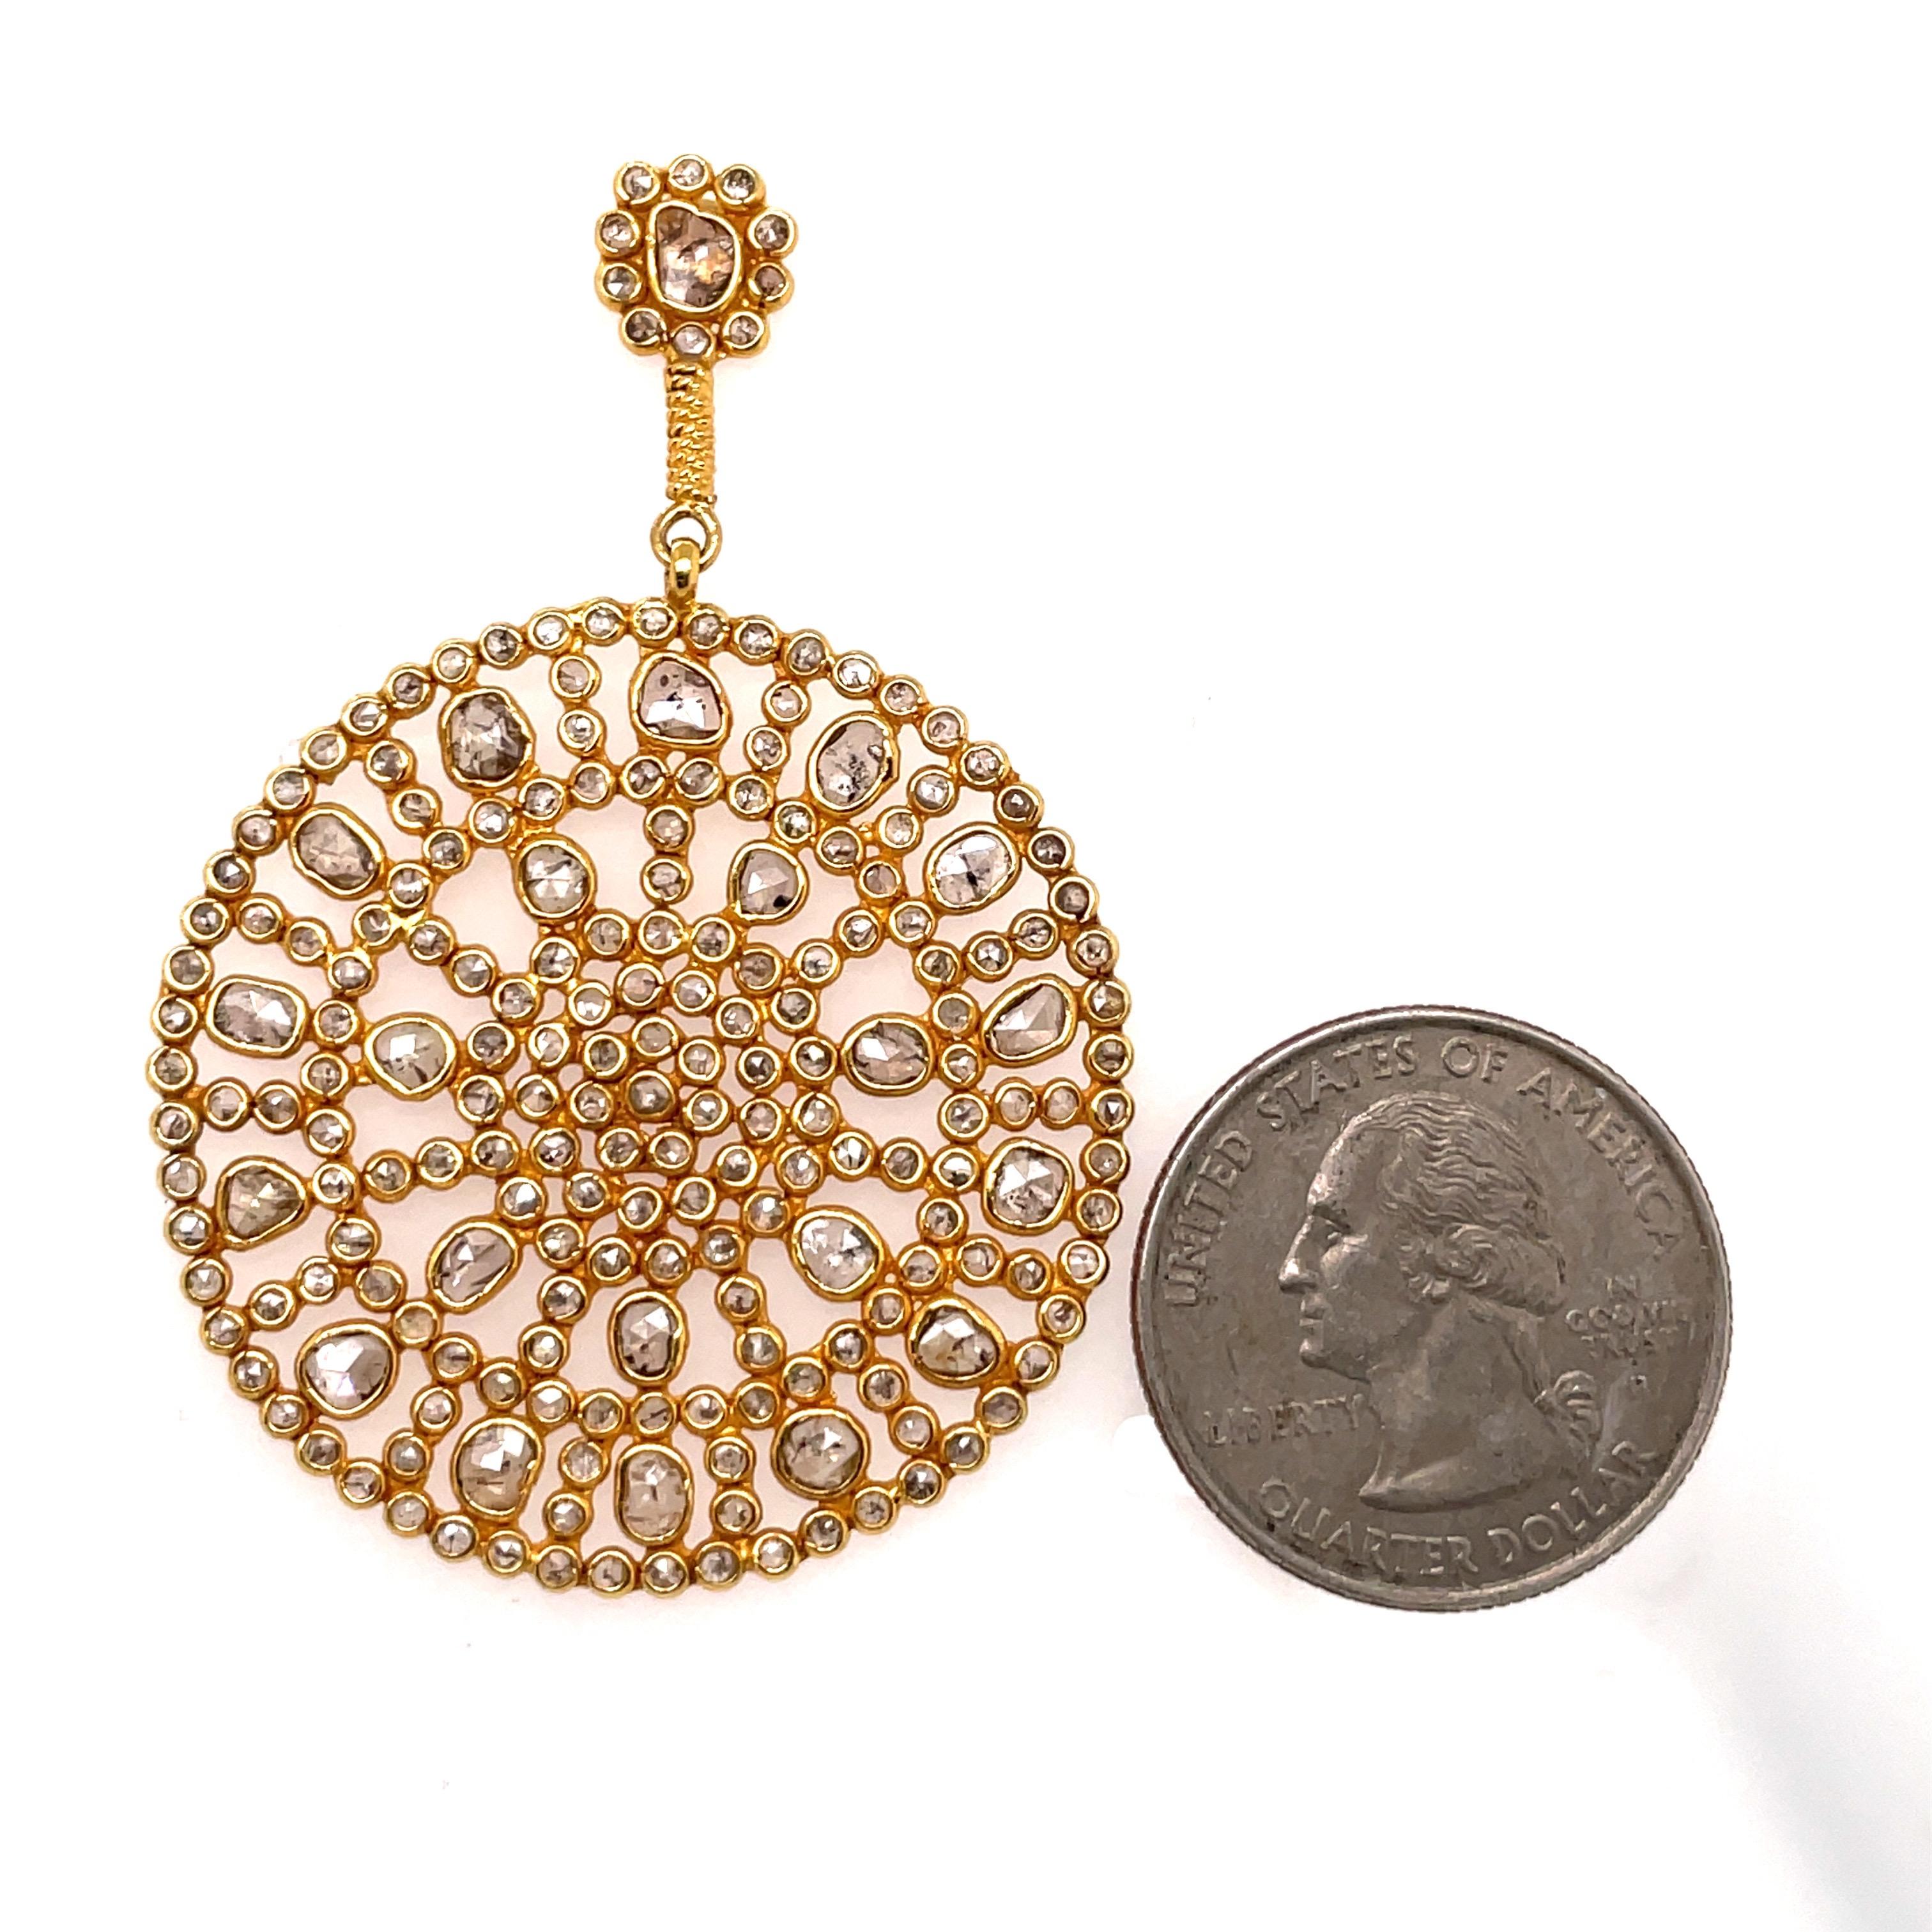 Boucles d'oreilles disque en or jaune 18 carats avec de nombreux diamants tranchés pesant environ 11 carats.
Très à la mode !  